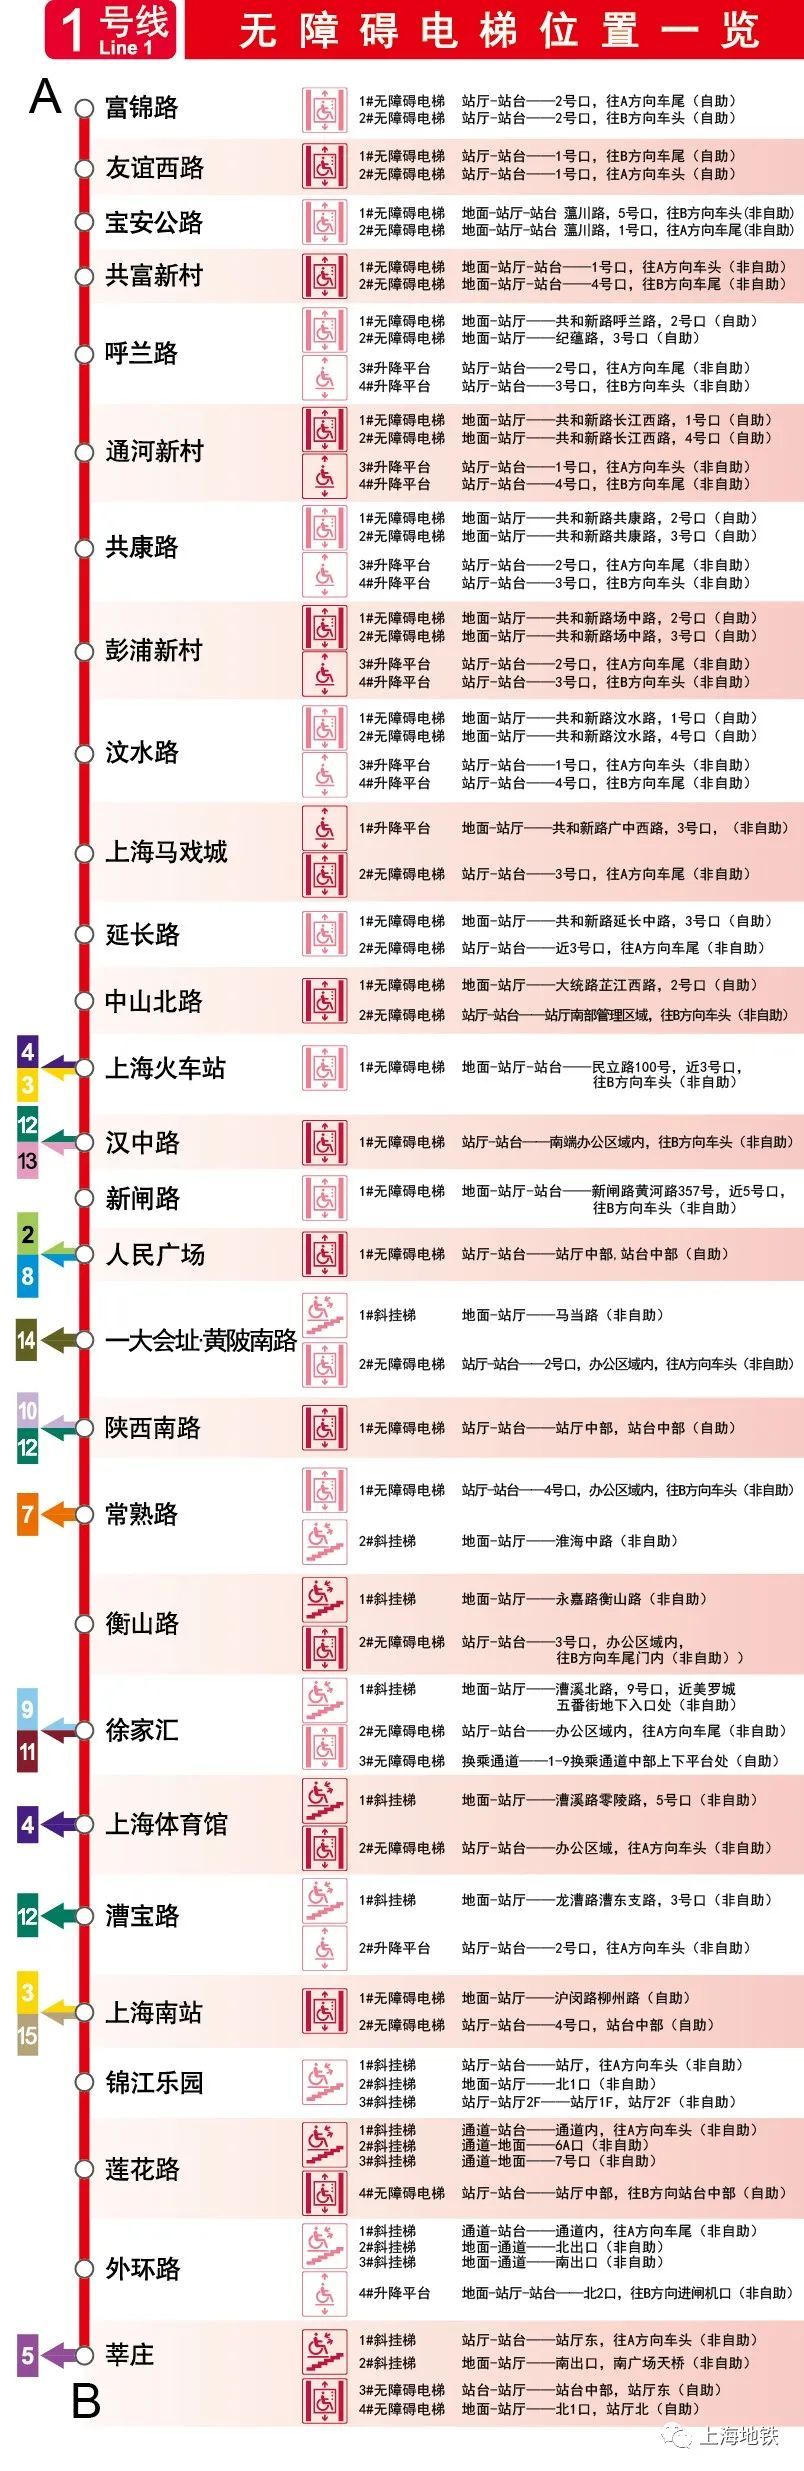 上海地铁票价查询表图图片